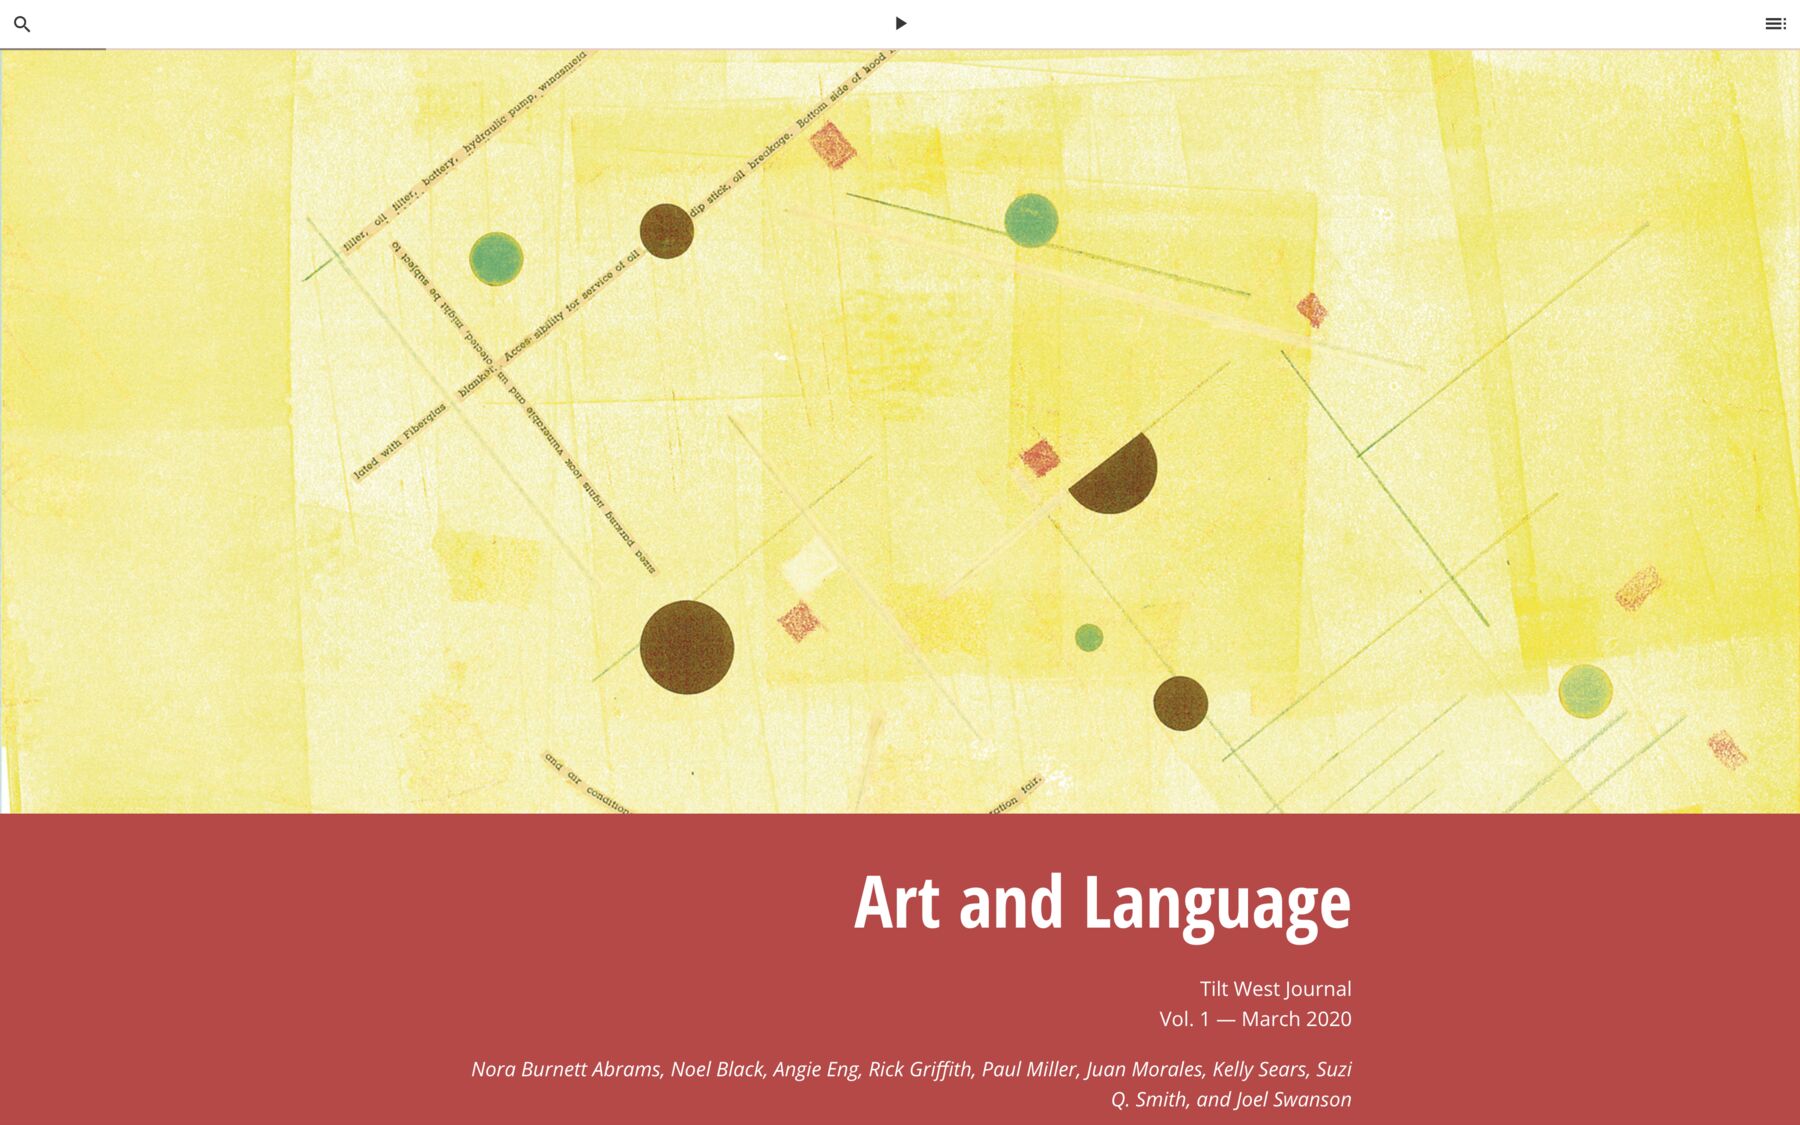 Art & Language, Tilt West Journal, Vol. 1, March 2020